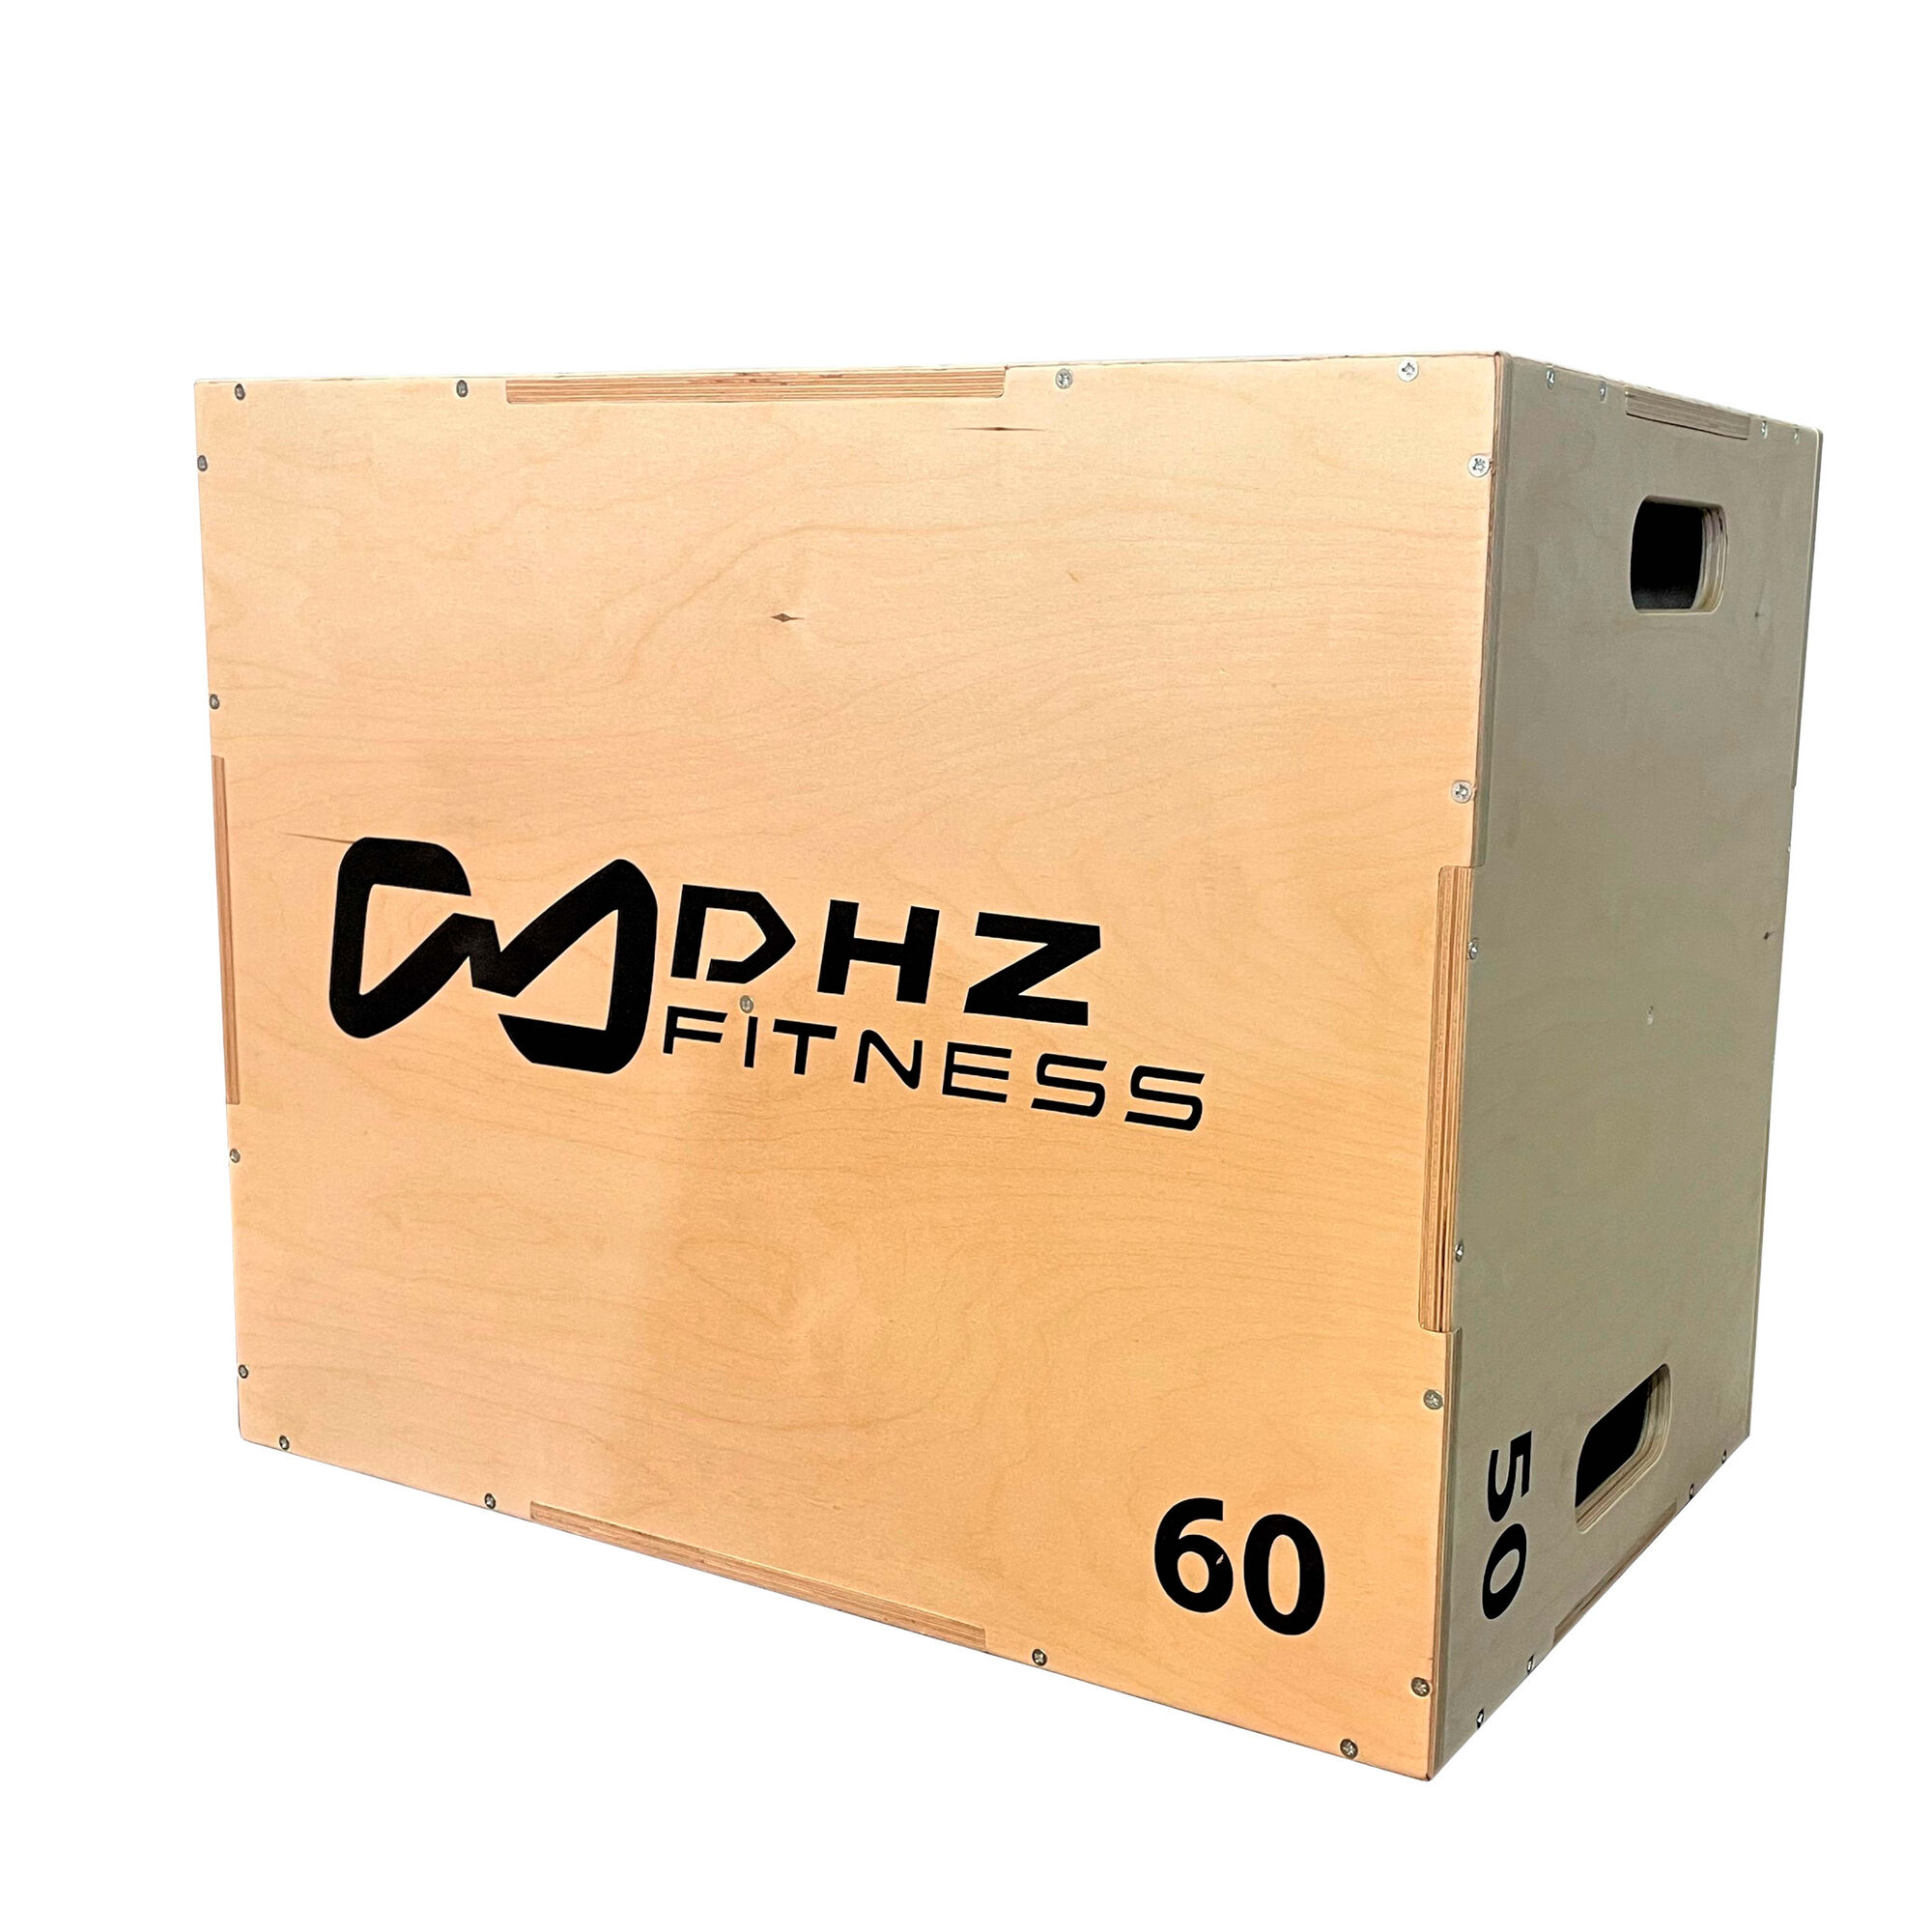 Универсальный PLYO BOX разборный с разметкой шкалы наклона фанера, 3 в 1, 50-60-75см DHZ FITNESS FS2091